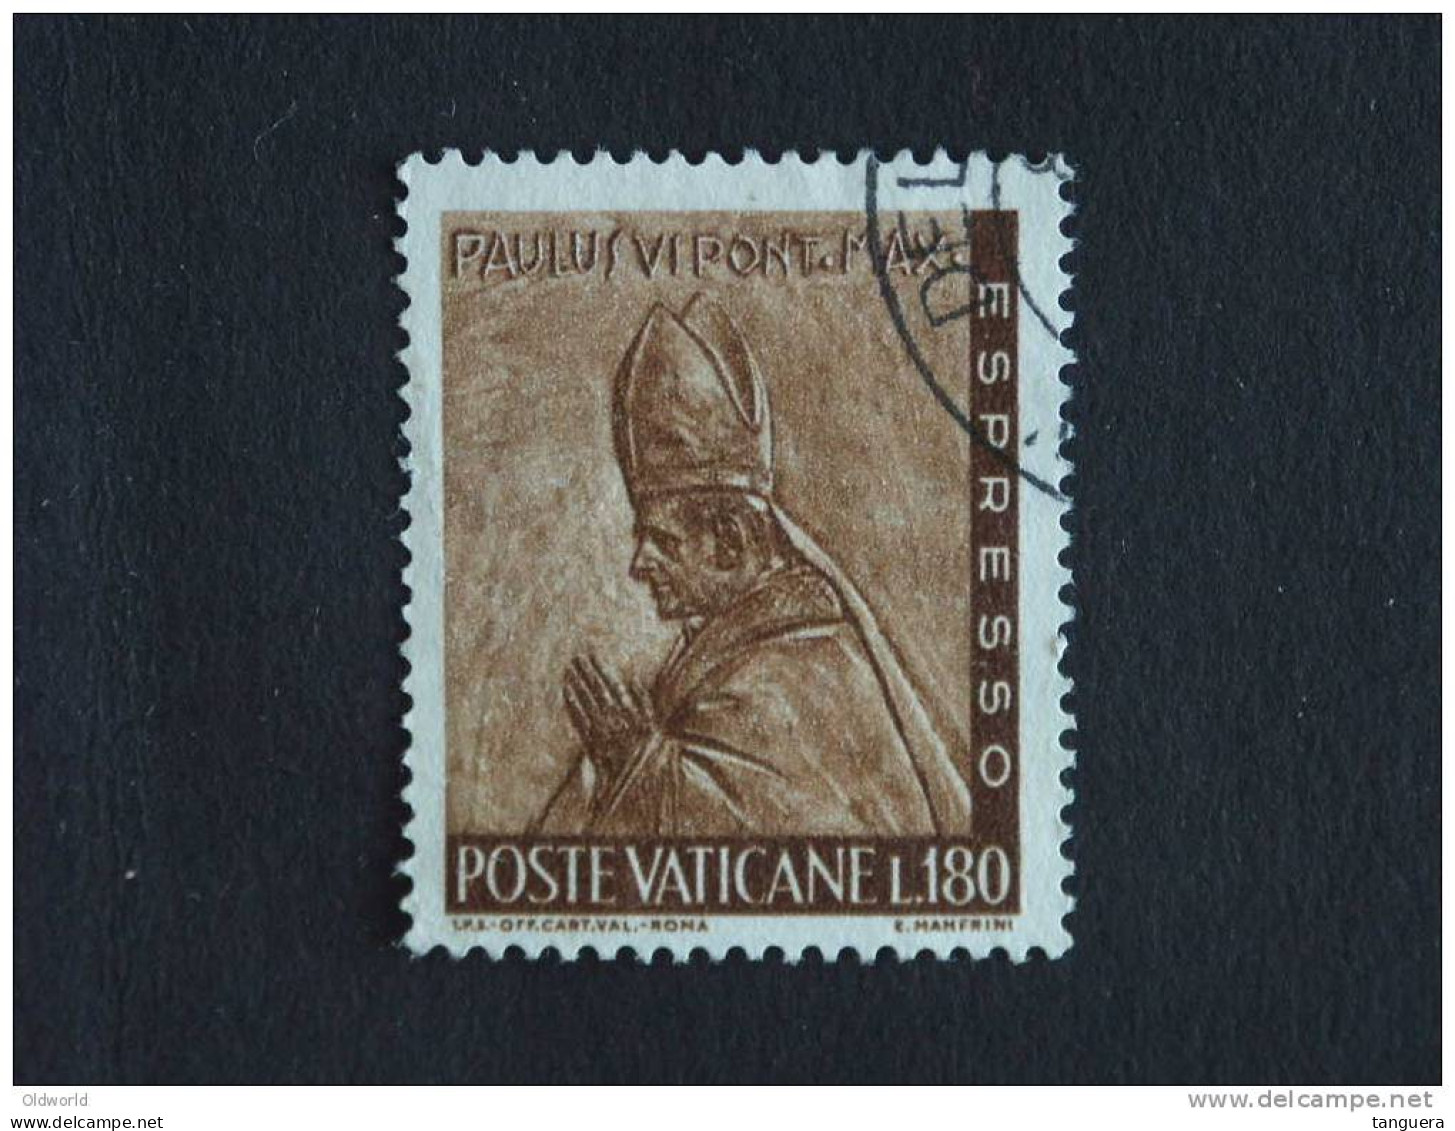 Vaticaanstad Vatican Vaticane 1966 Expres Paul VI Yv 18 O - Express